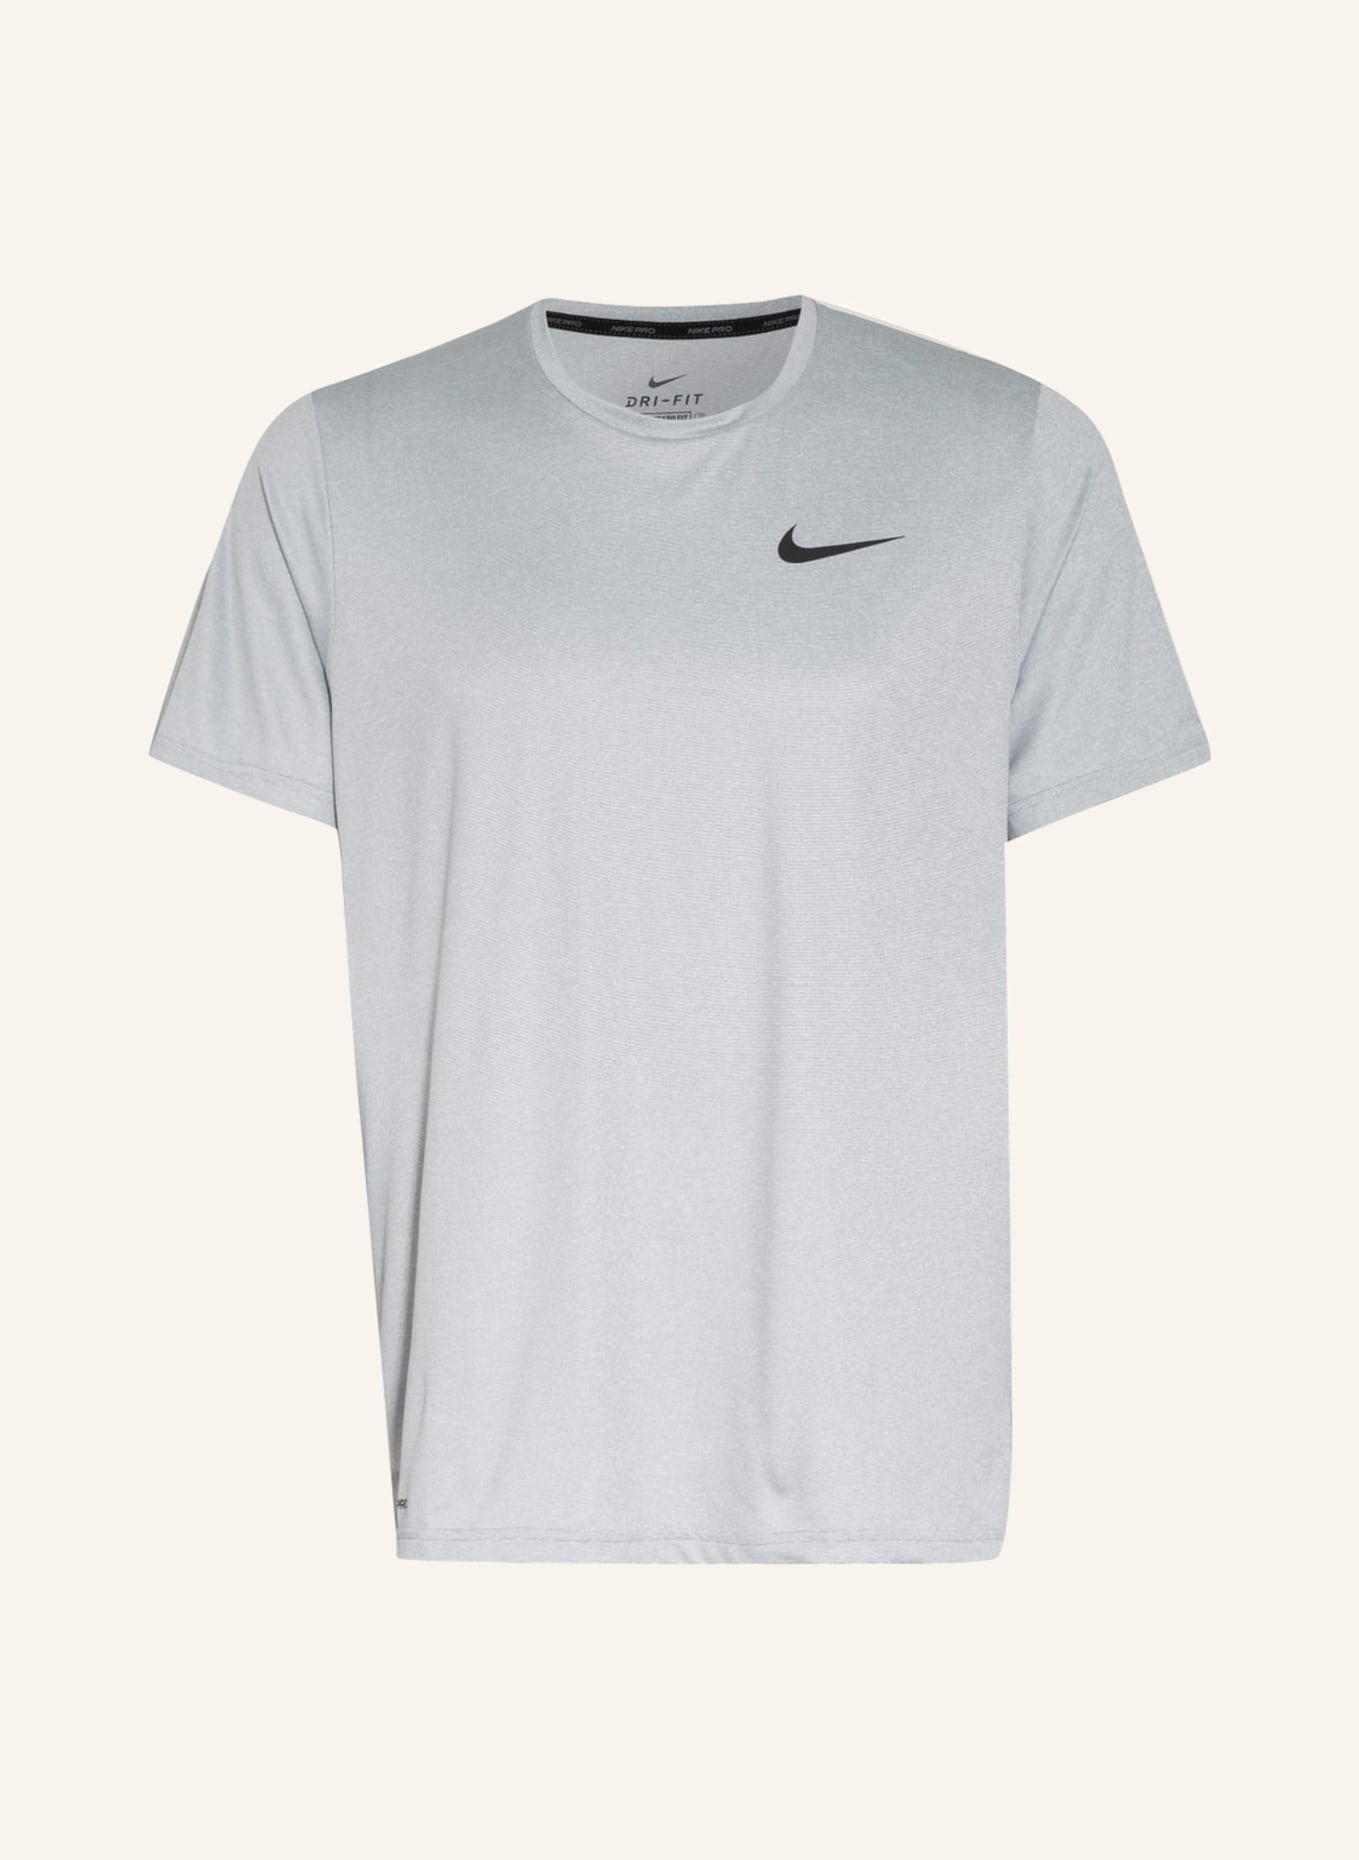 Nike T-shirt PRO DRI-FIT, Color: LIGHT GRAY (Image 1)